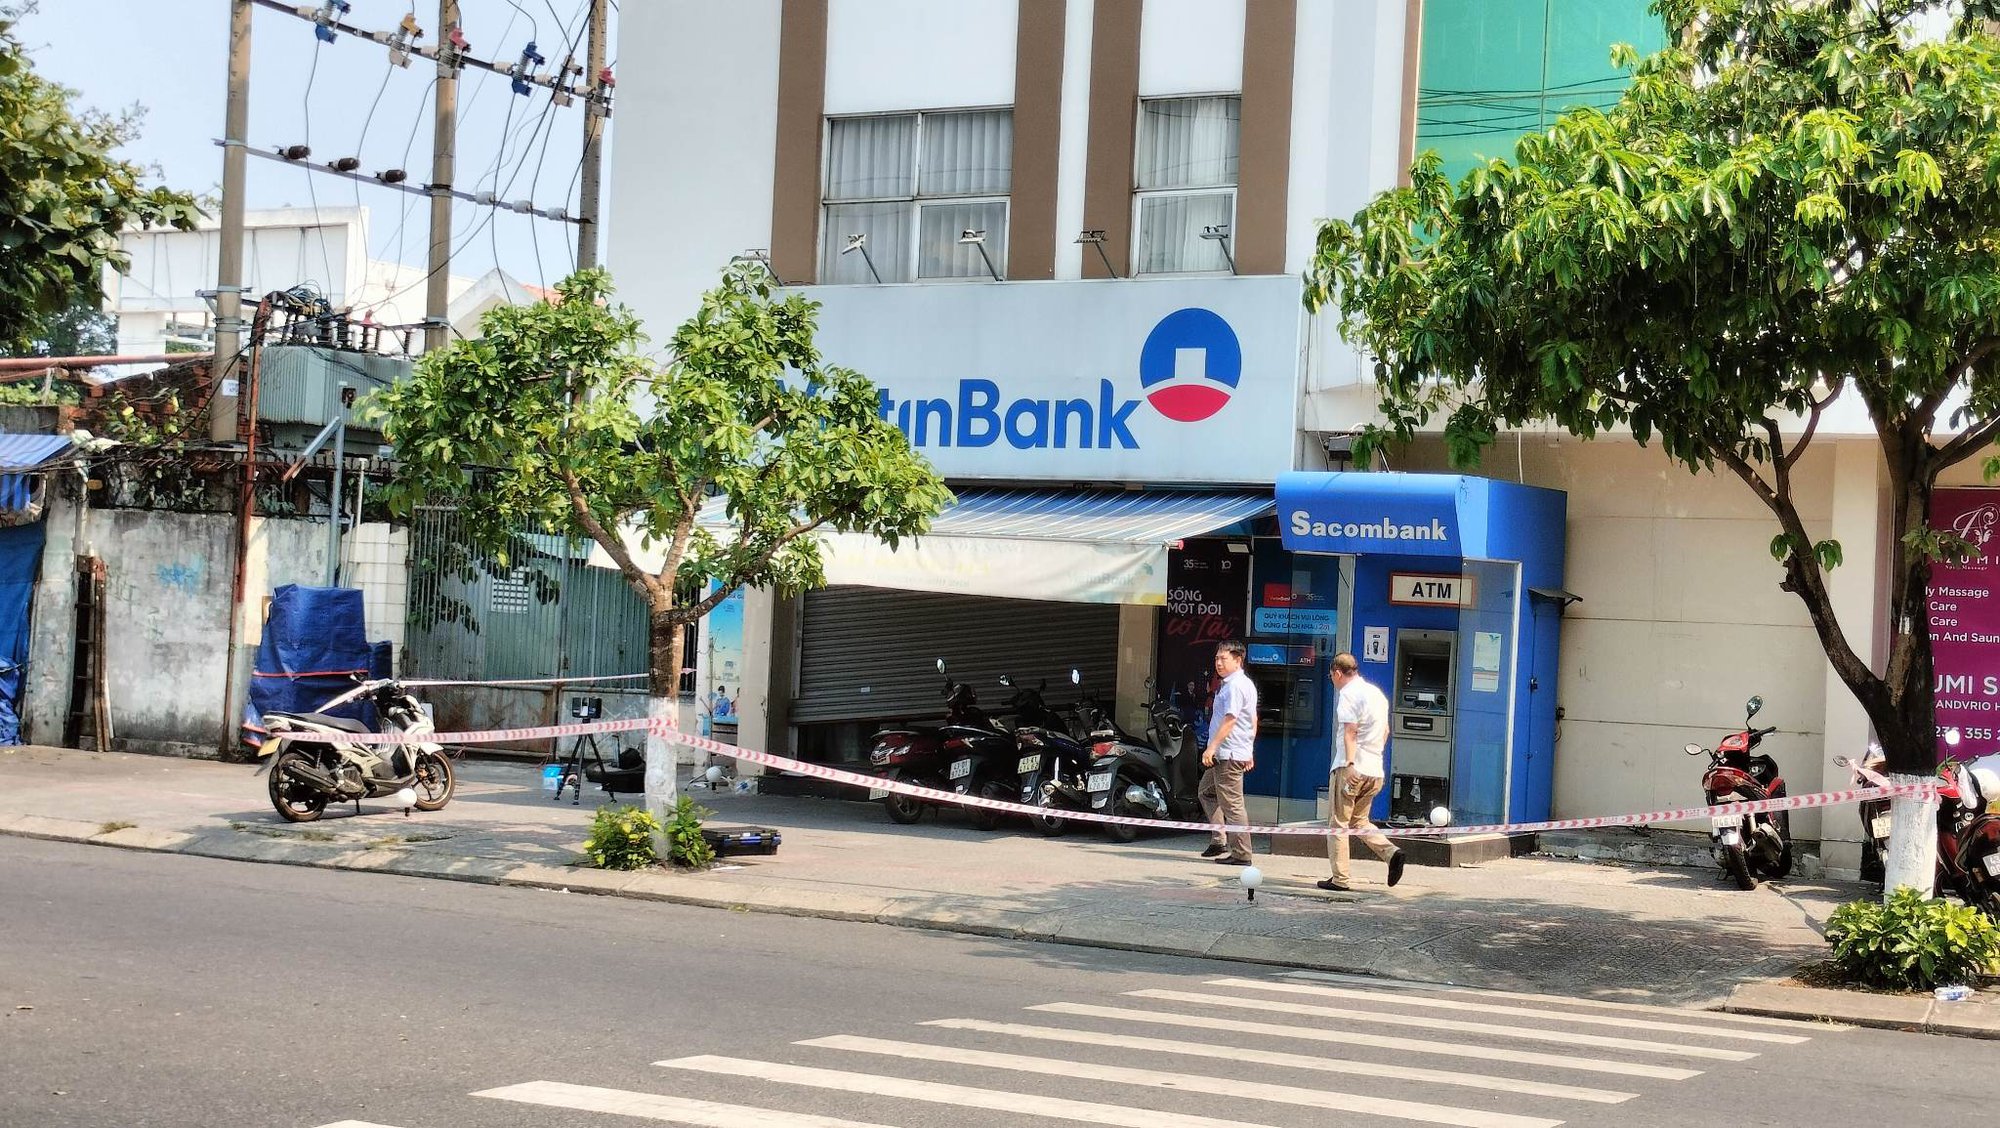 Vụ cướp ngân hàng ở Đà Nẵng: Công an công bố các yếu tố nhận dáng kẻ gây án - Ảnh 2.